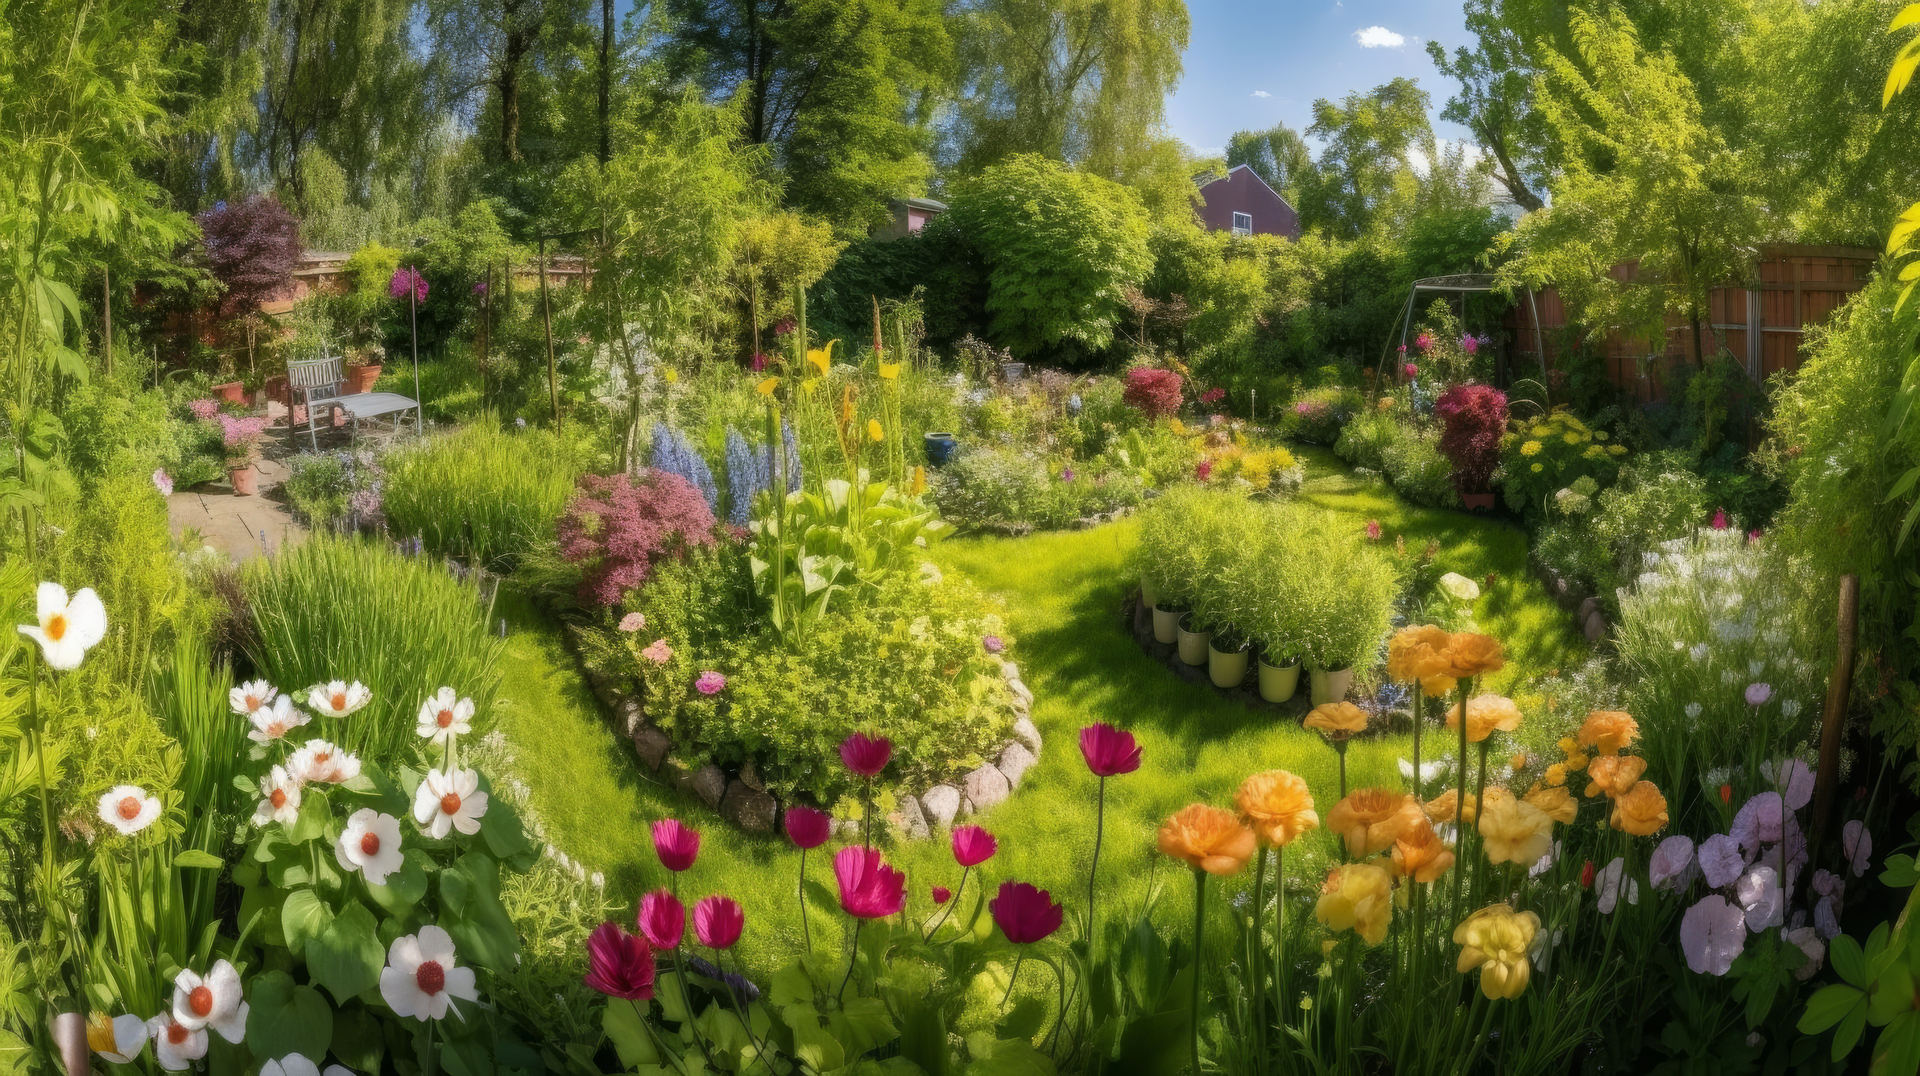 Na zdjęciu widać pięknie zaprojektowany ogród. Na pierwszym planie rozciąga się trawnik o intensywnie zielonym kolorze, starannie przycięty i równo zazieleniony. Wokół trawnika rozmieszczone są różnorodne rośliny ozdobne, takie jak kolorowe kwiaty